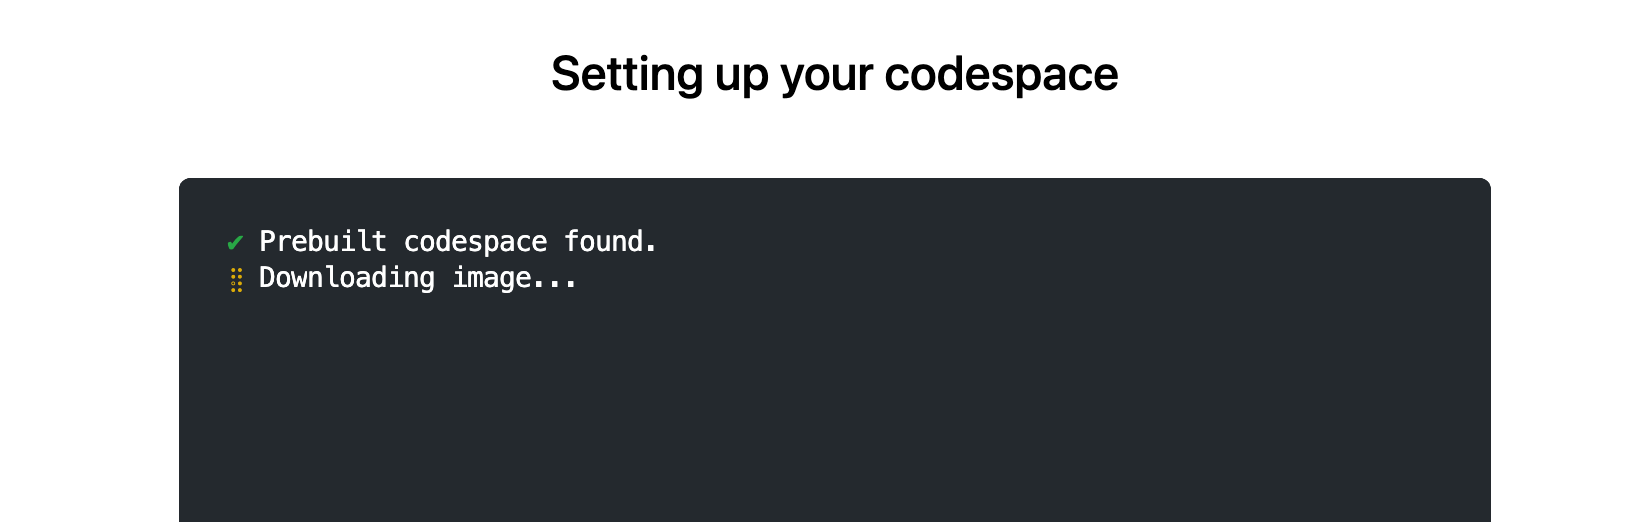 Captura de tela da página "Configurar seu codespace", com o texto: "Codespace predefinido encontrado. Baixando imagem."